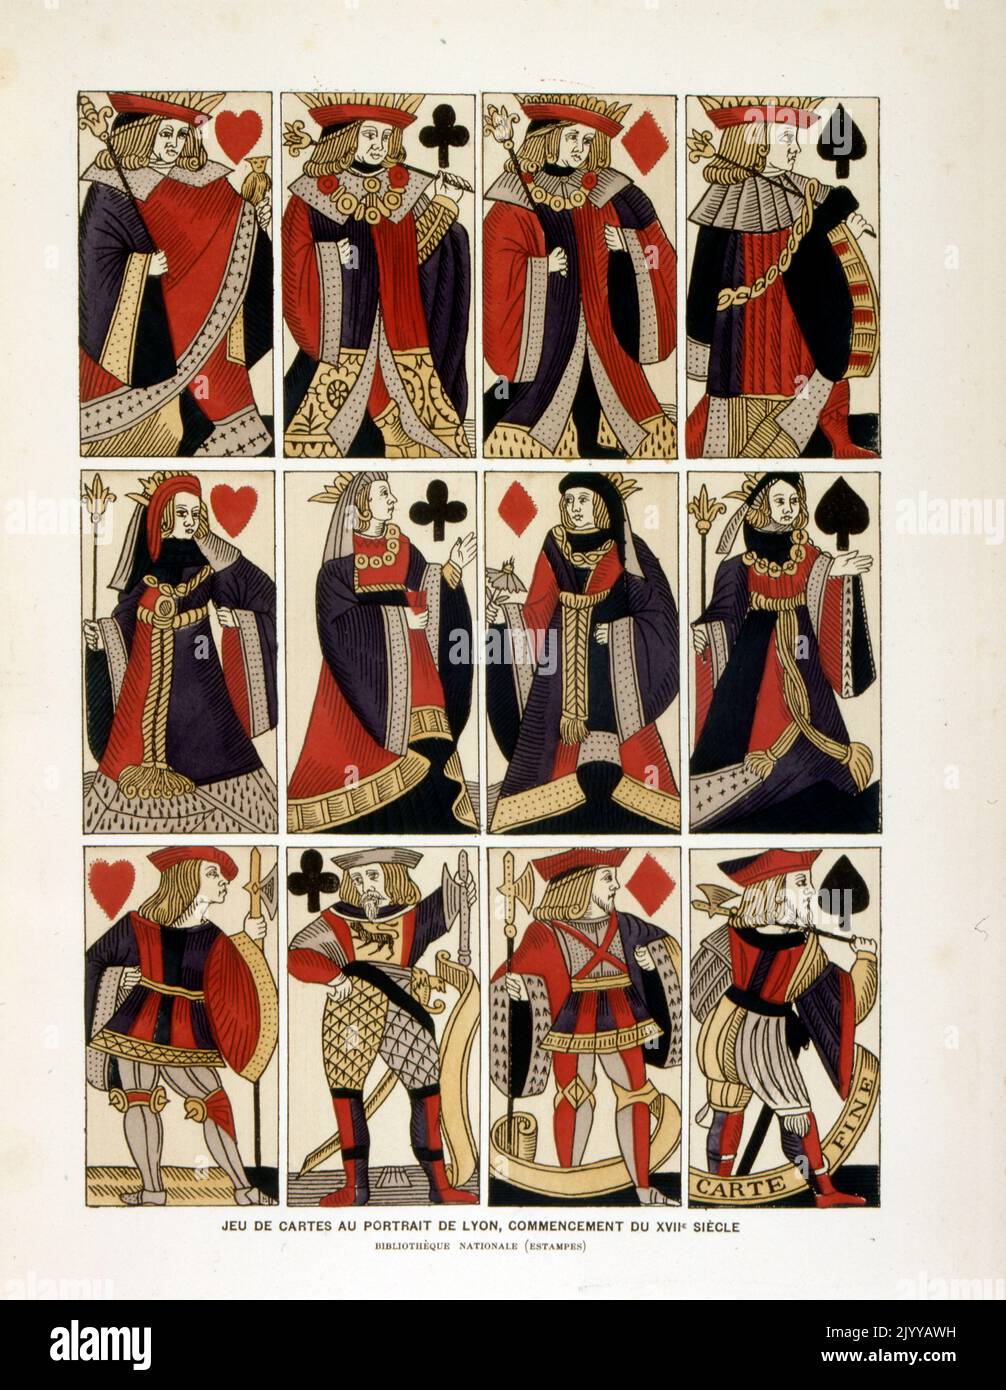 Illustration colorée d'un lot de cartes à jouer avec le portrait de Lyon au début du 17th siècle. Banque D'Images